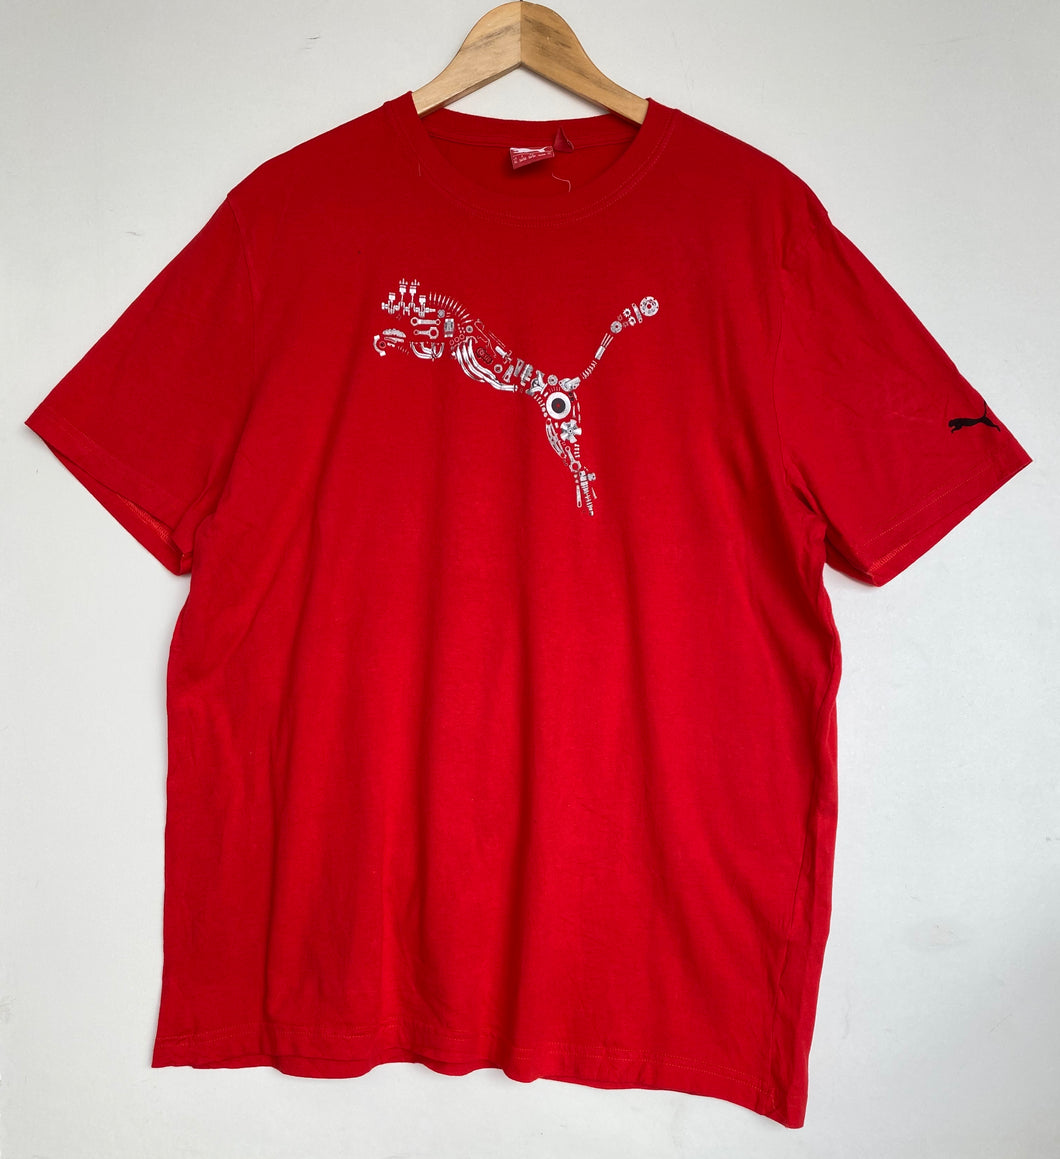 Puma t-shirt (XL)